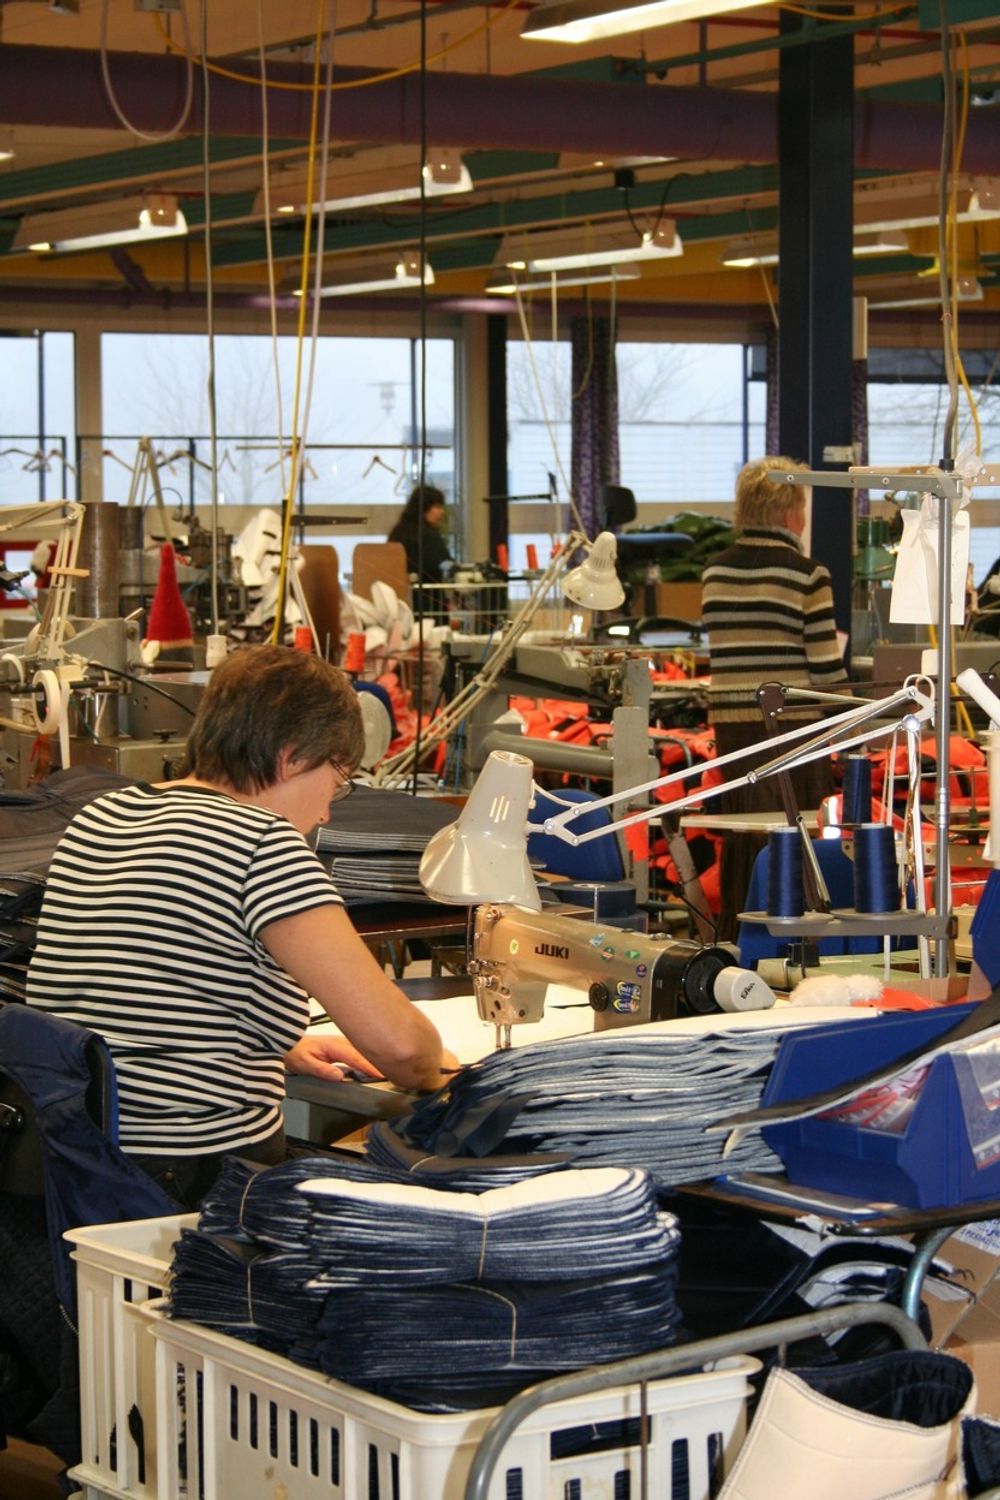 MANUELT I DAG: Produksjonslokalet til Helly Hansen er fullt av damer bak symaskiner.